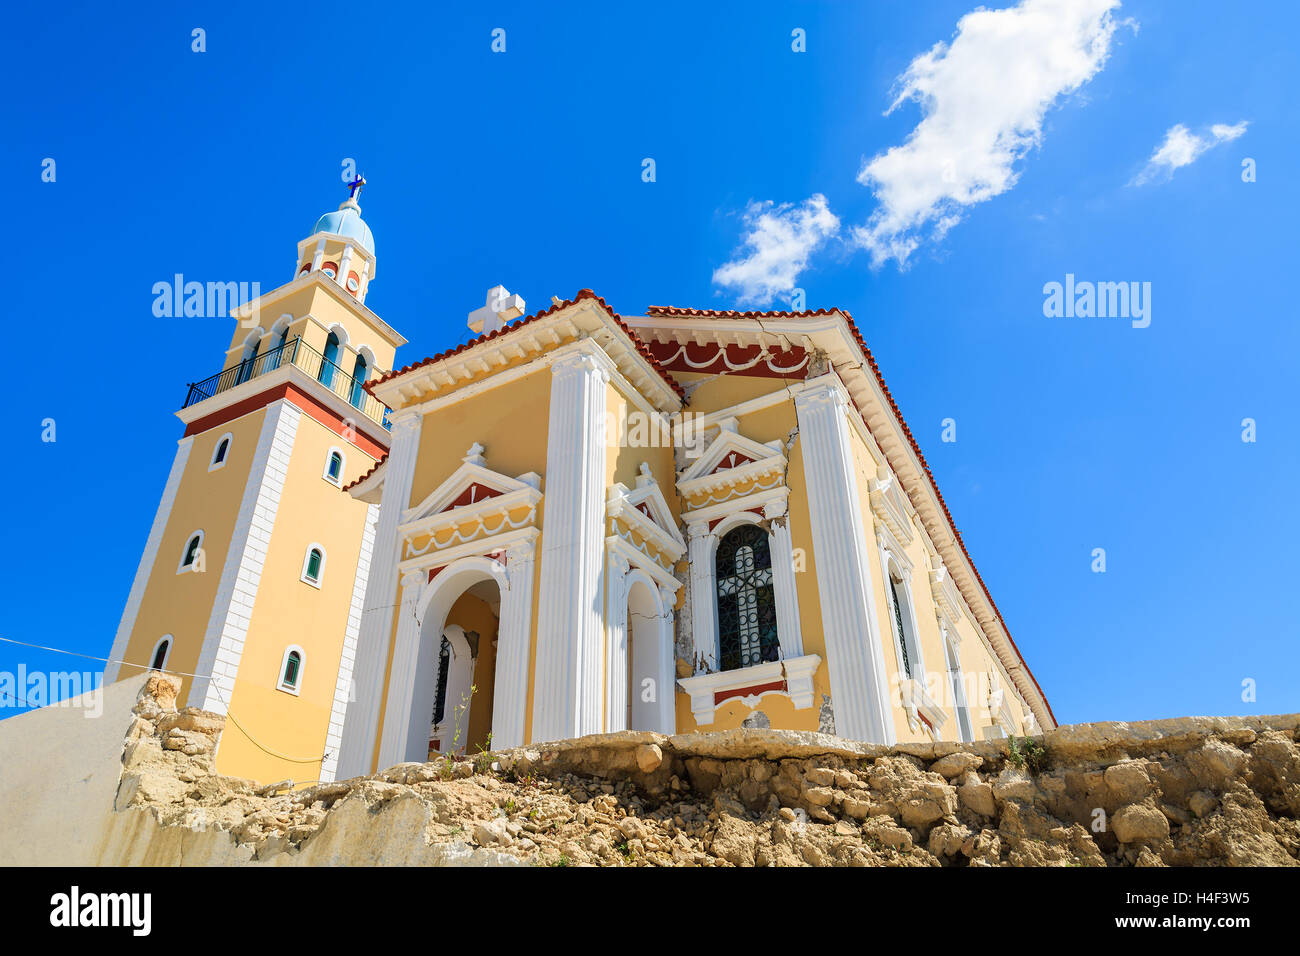 Church building against blue sky on Kefalonia island, Greece Stock Photo